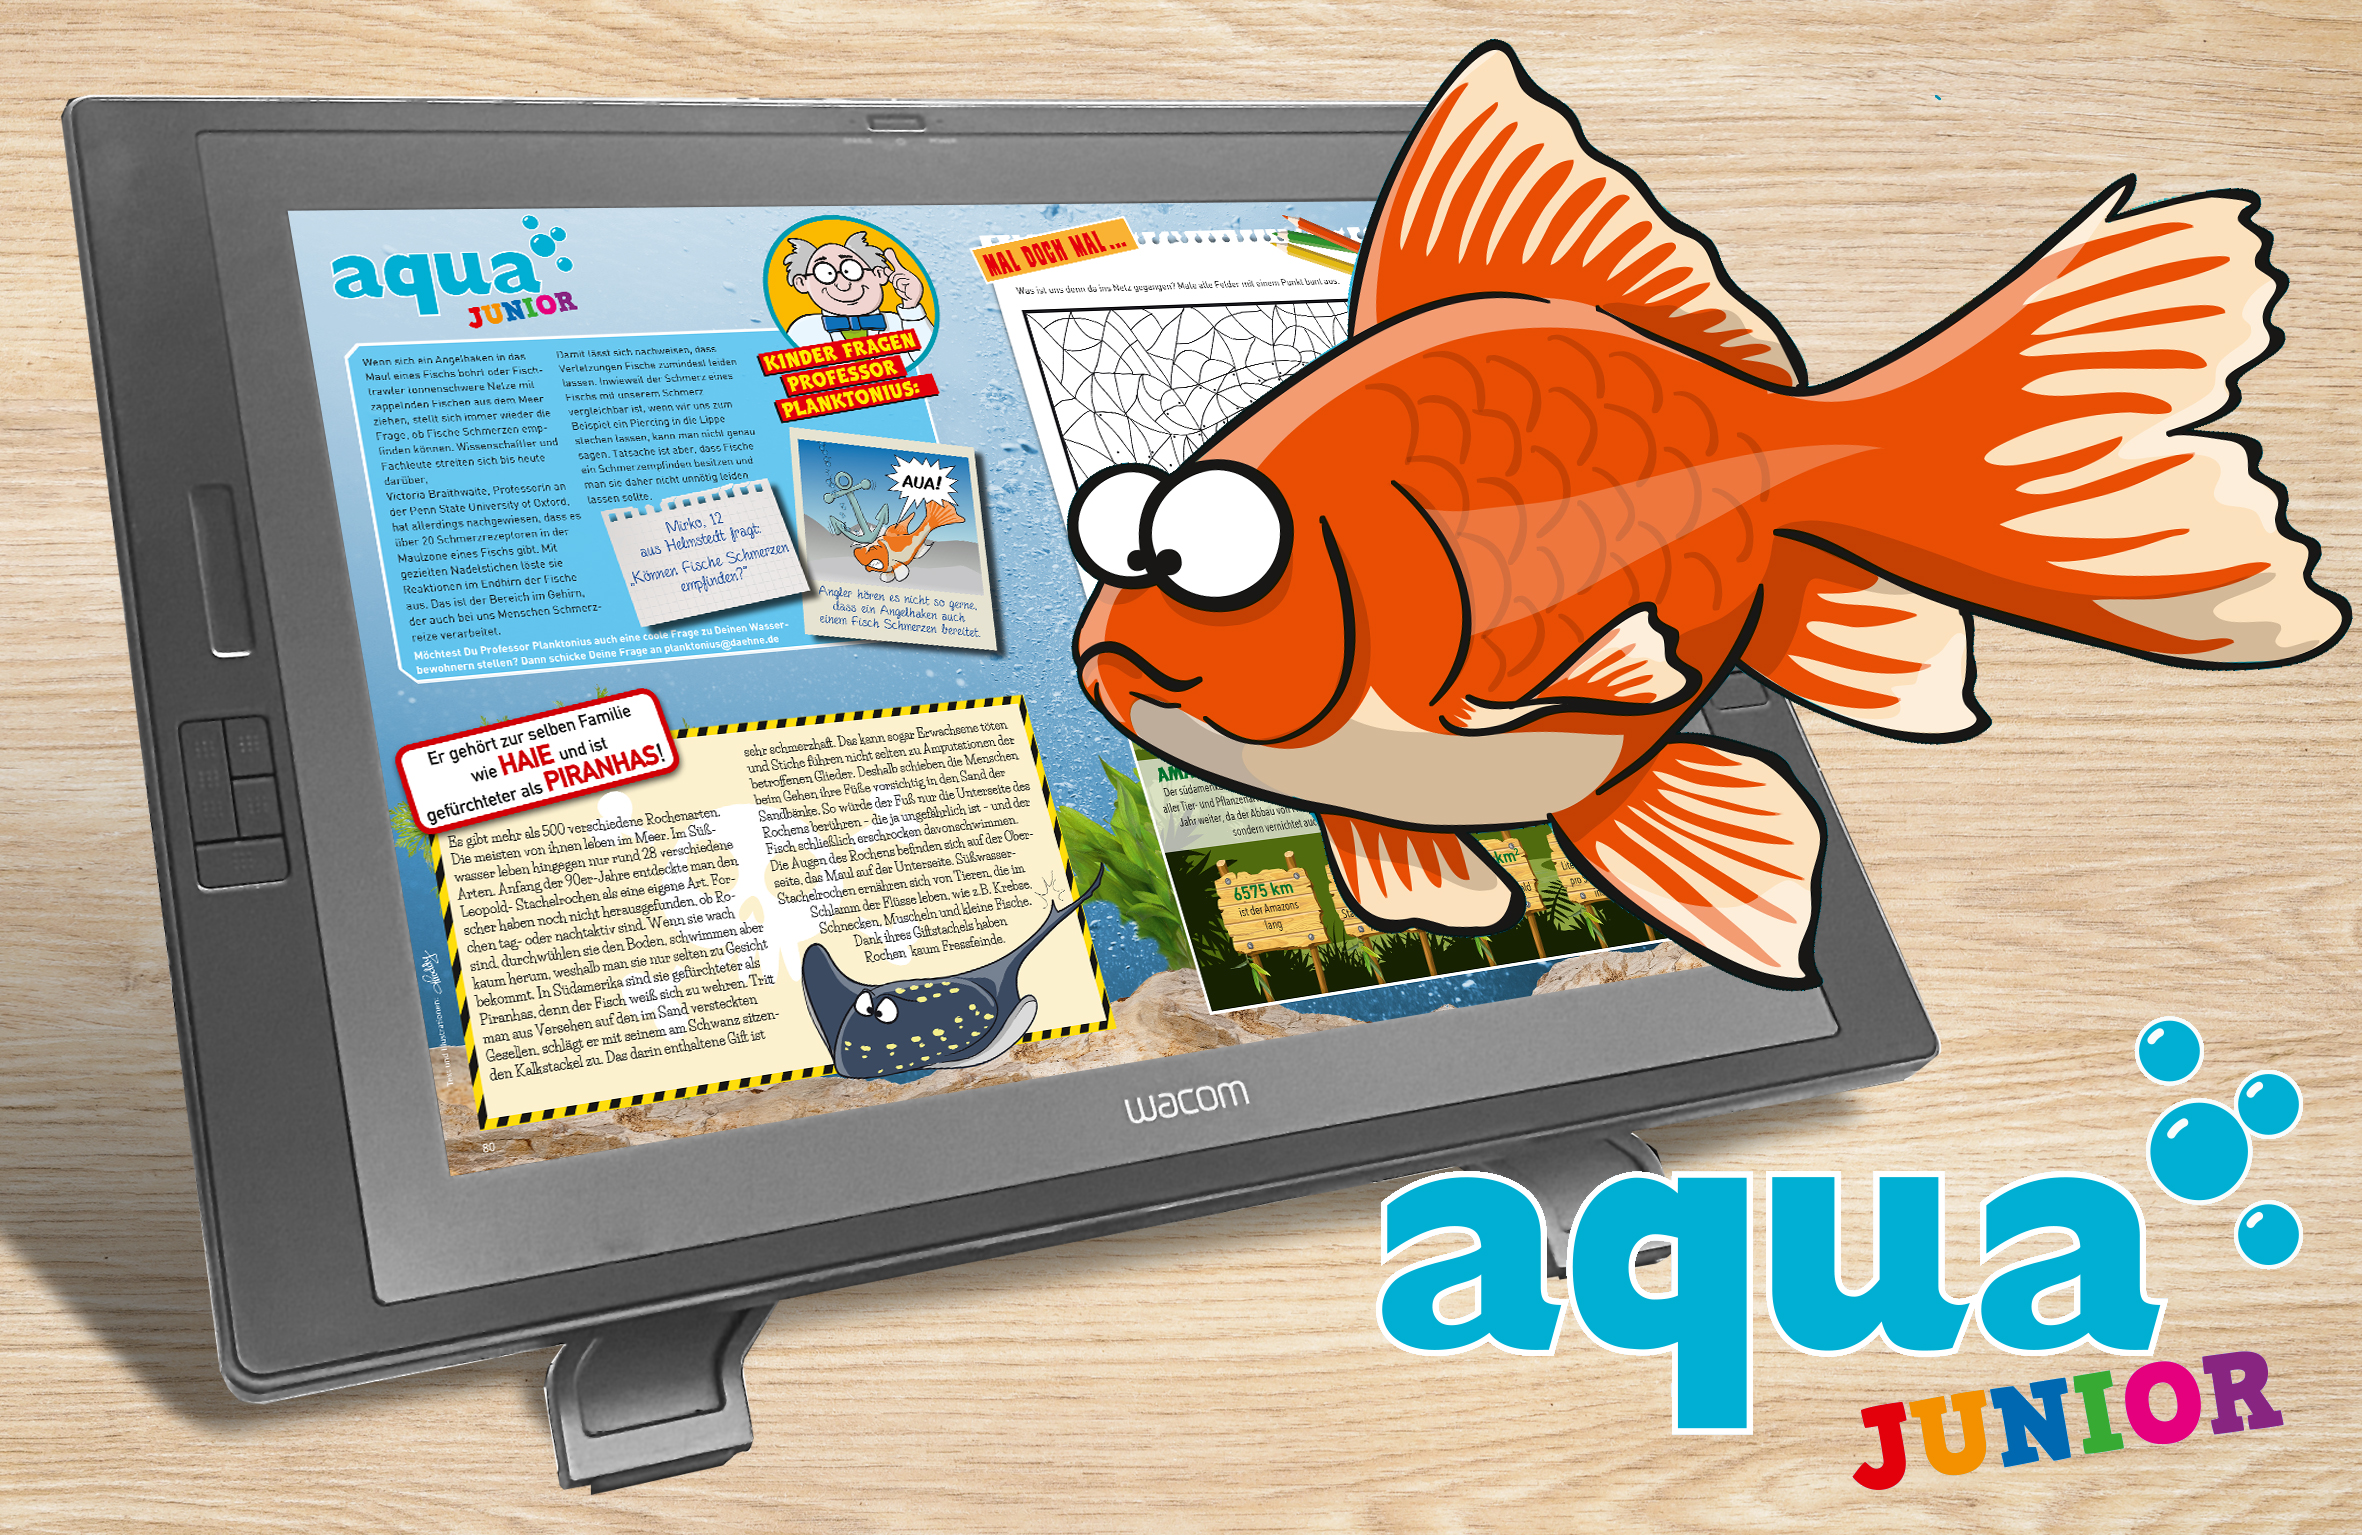 Aqua junior